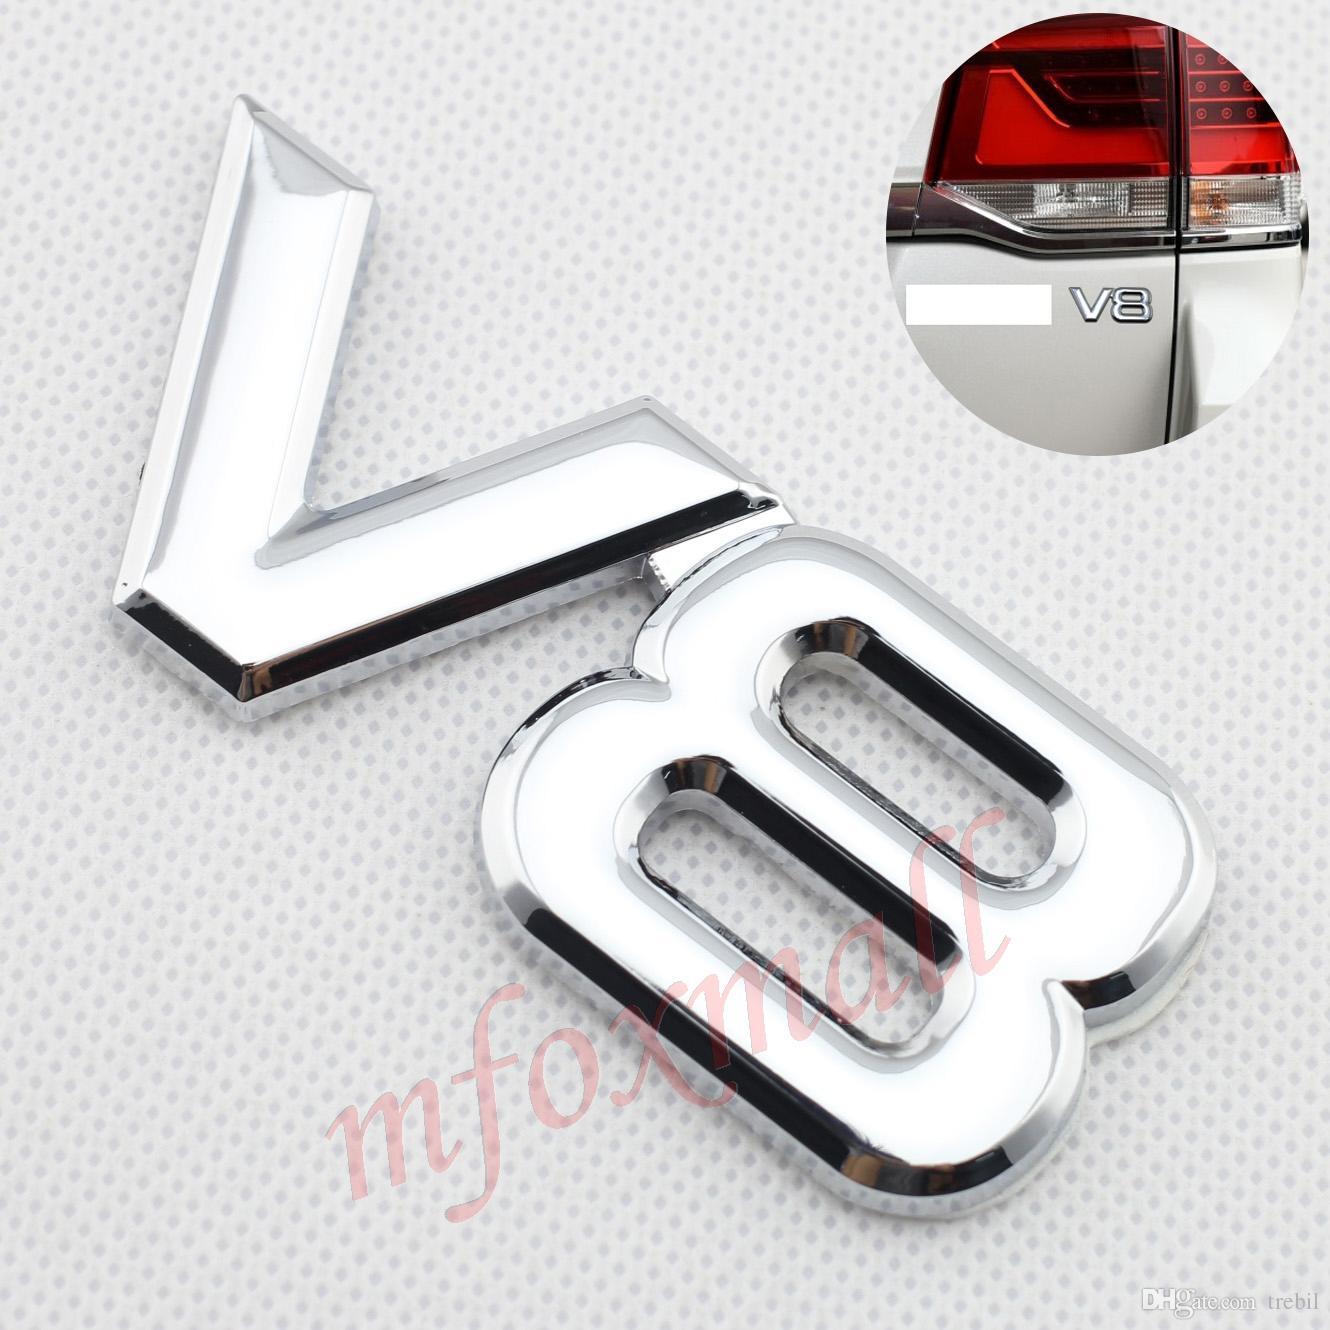 V8 Logo - Universal Parts 3D Chrome Metal V8 Logo Emblem Badge Trim Auto ...